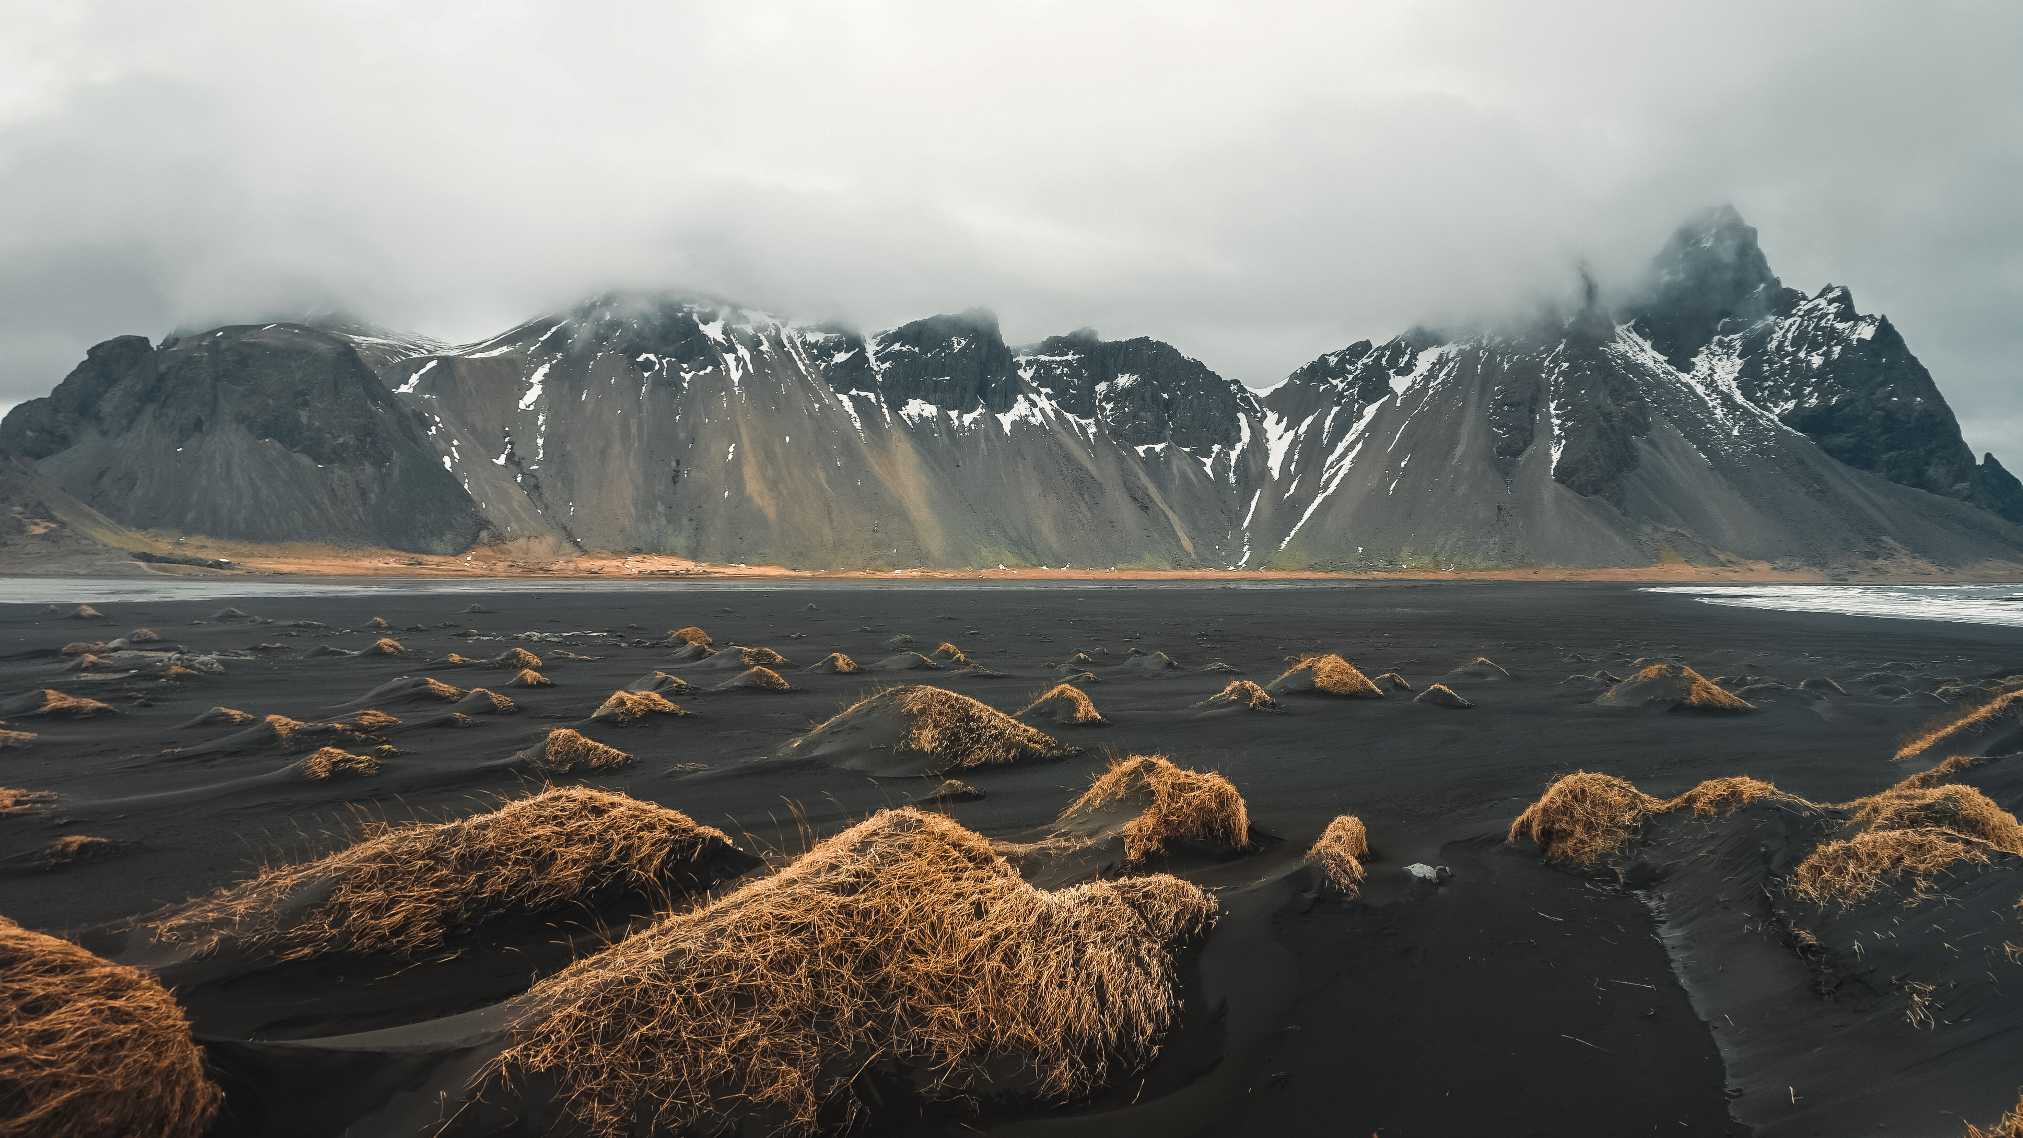 Iceland's landscape